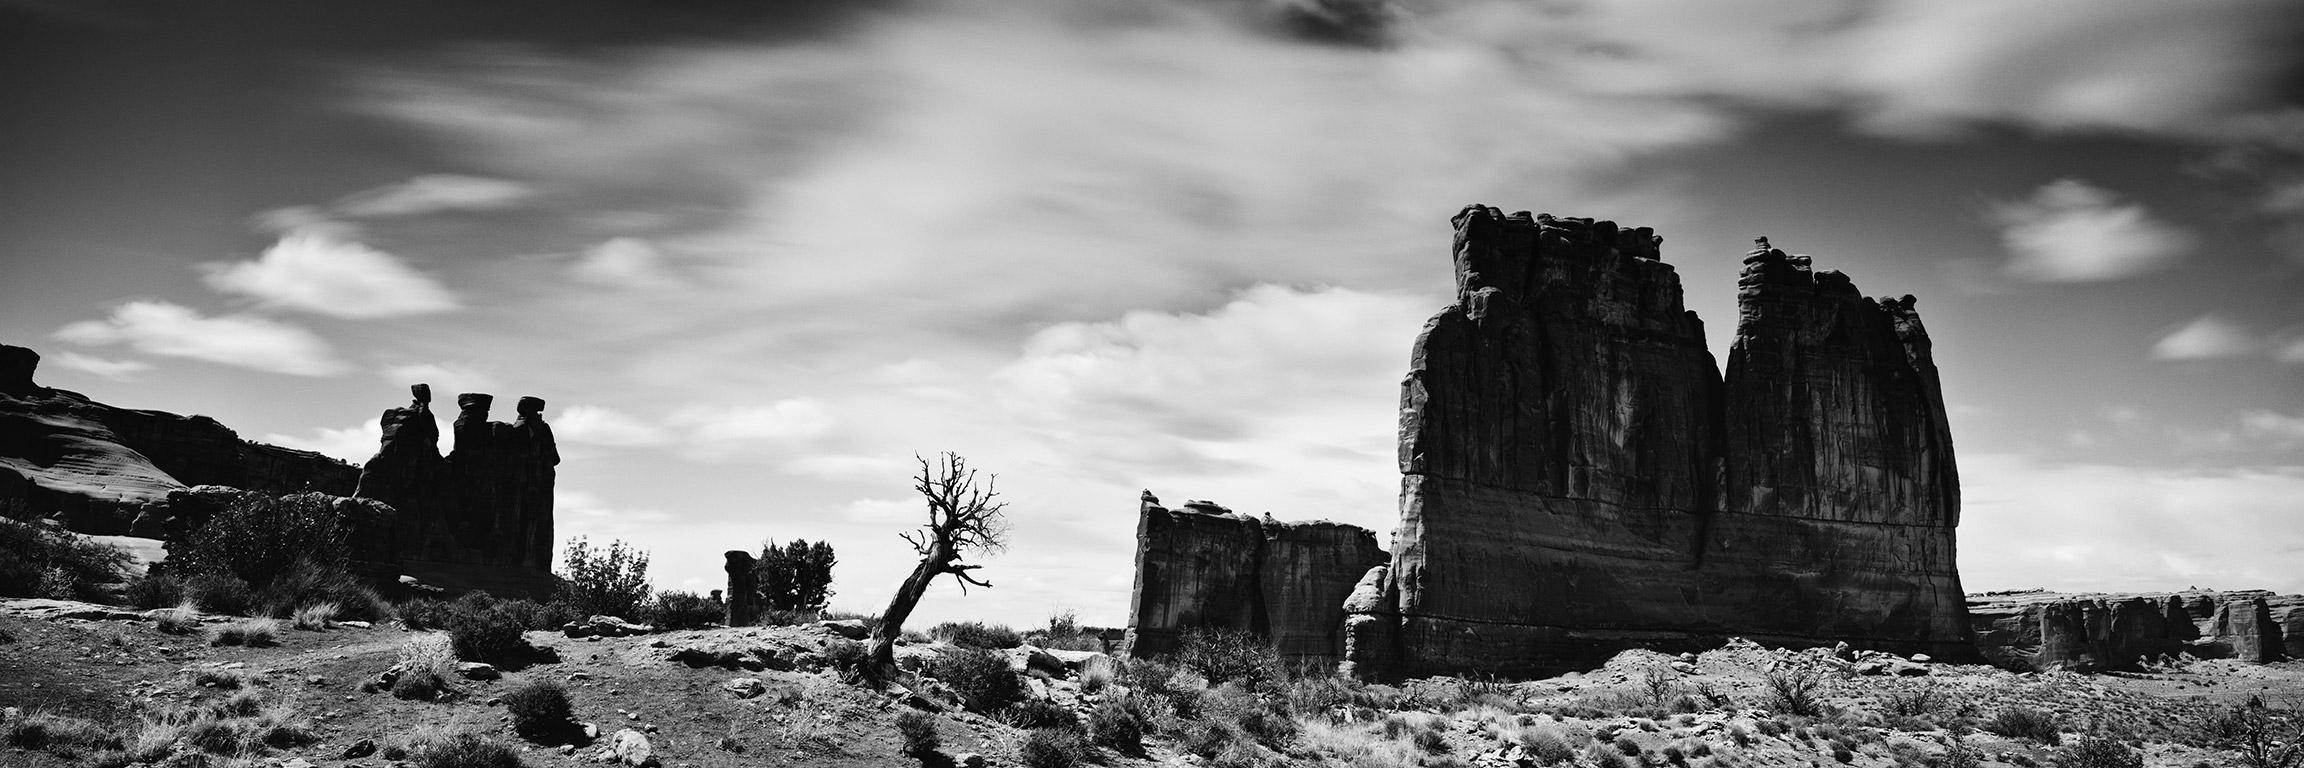 Gerald Berghammer Black and White Photograph – Wild West Panorama, Arches Park, Utah, USA, Schwarz-Weiß-Landschaftsfotografie